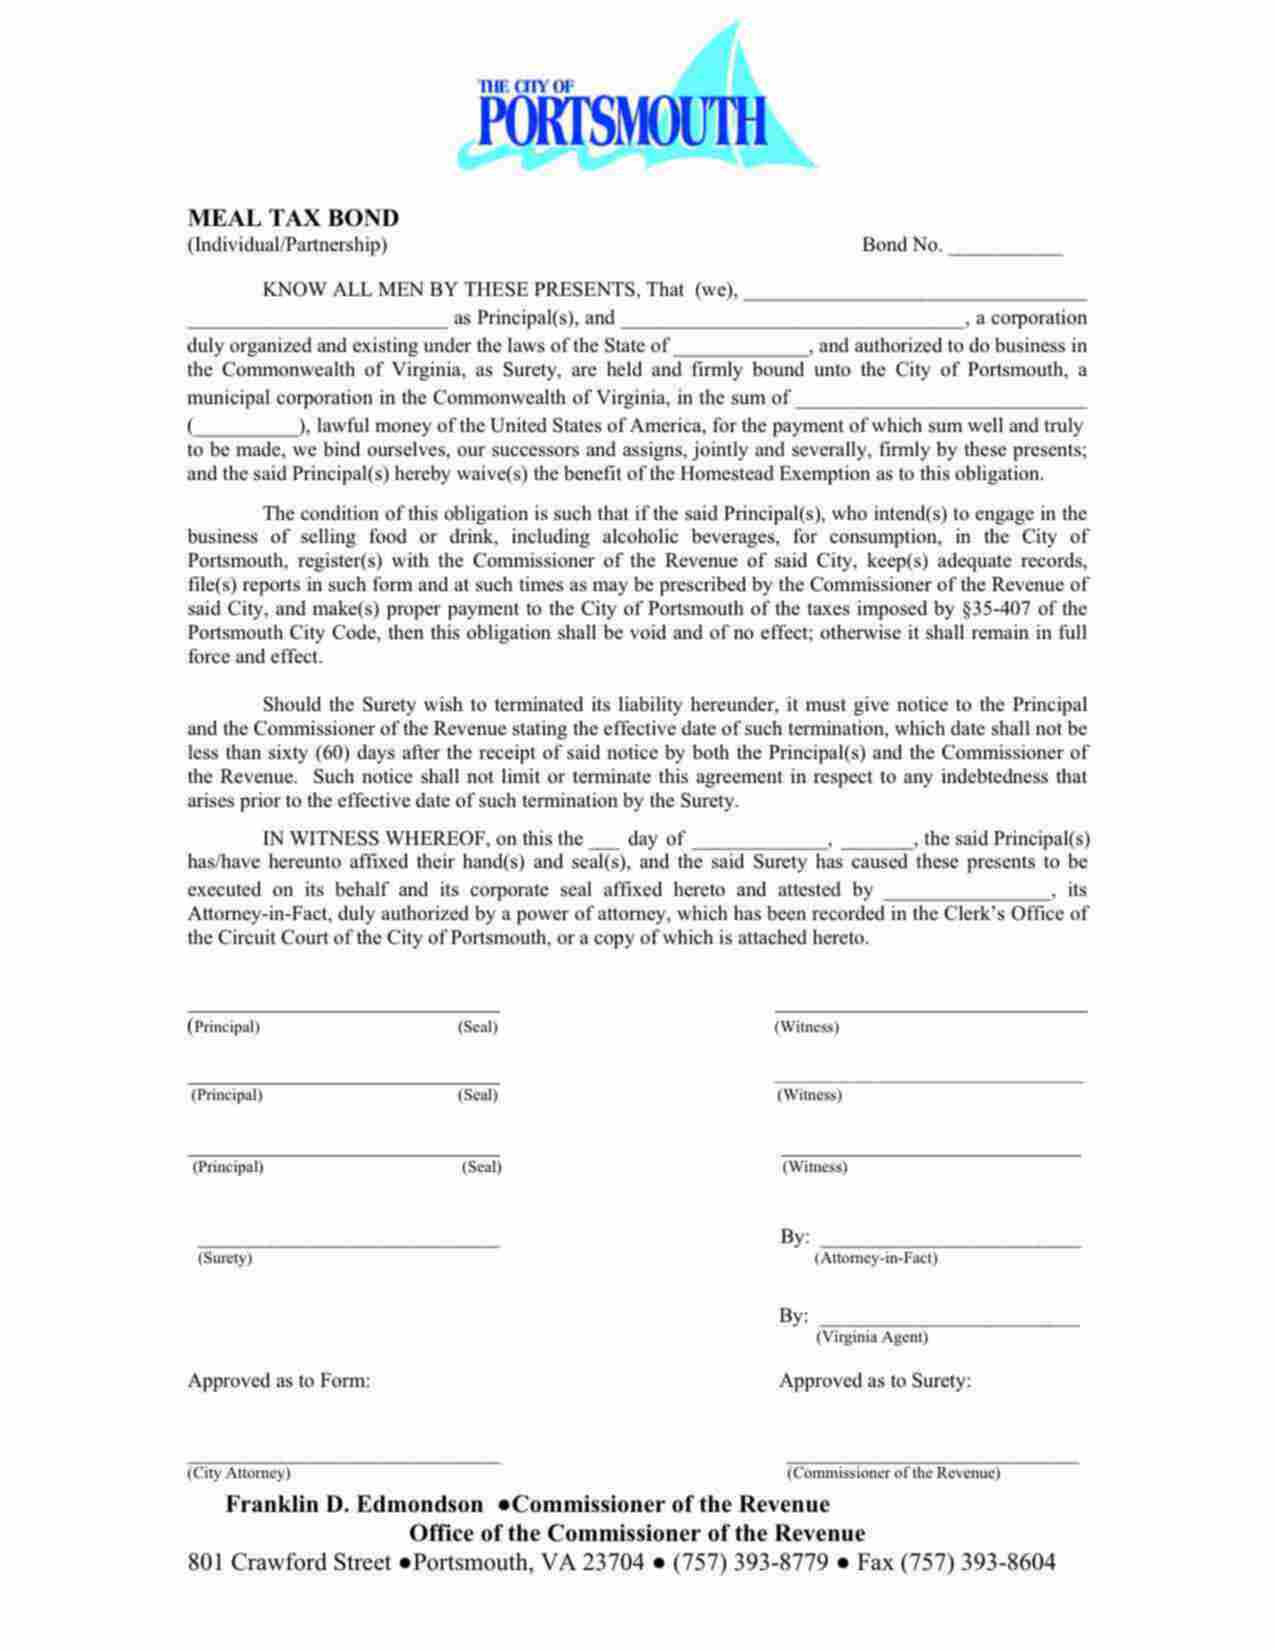 Virginia Meal Tax: Individual/Partnership Bond Form